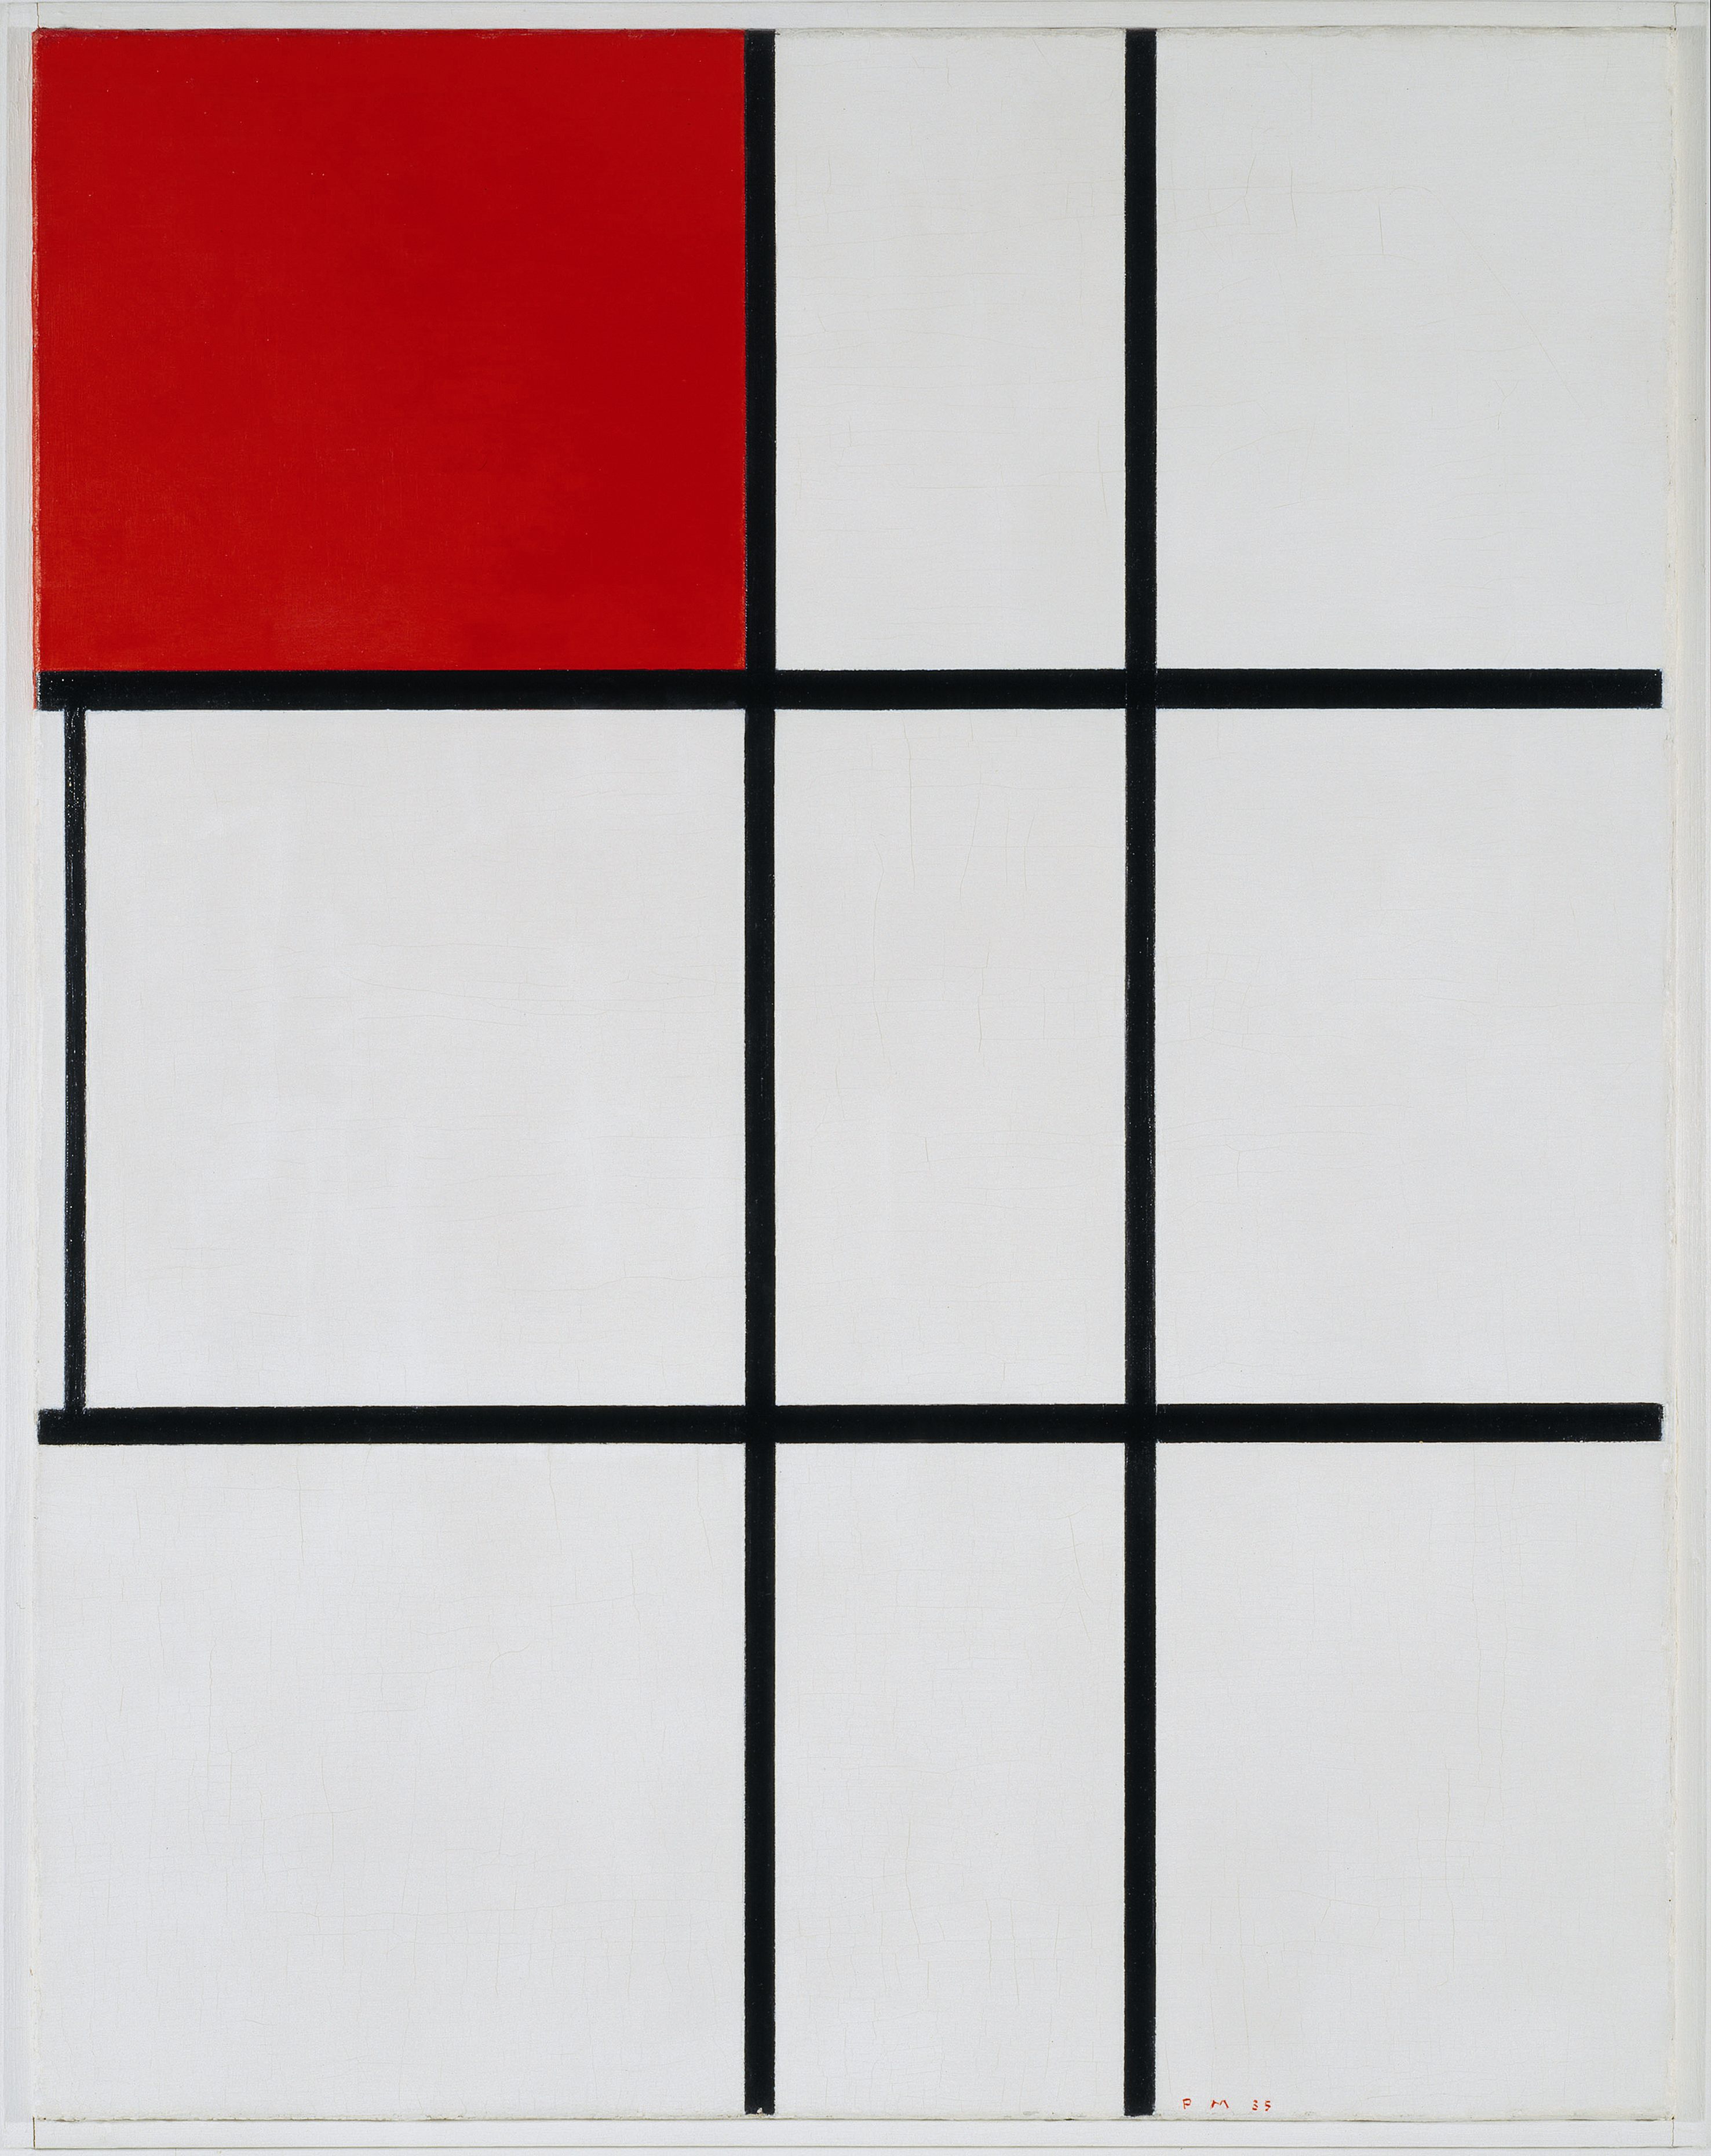 Composição B (Nr.II) com Vermelho by Piet Mondrian - 1935 Tate Modern